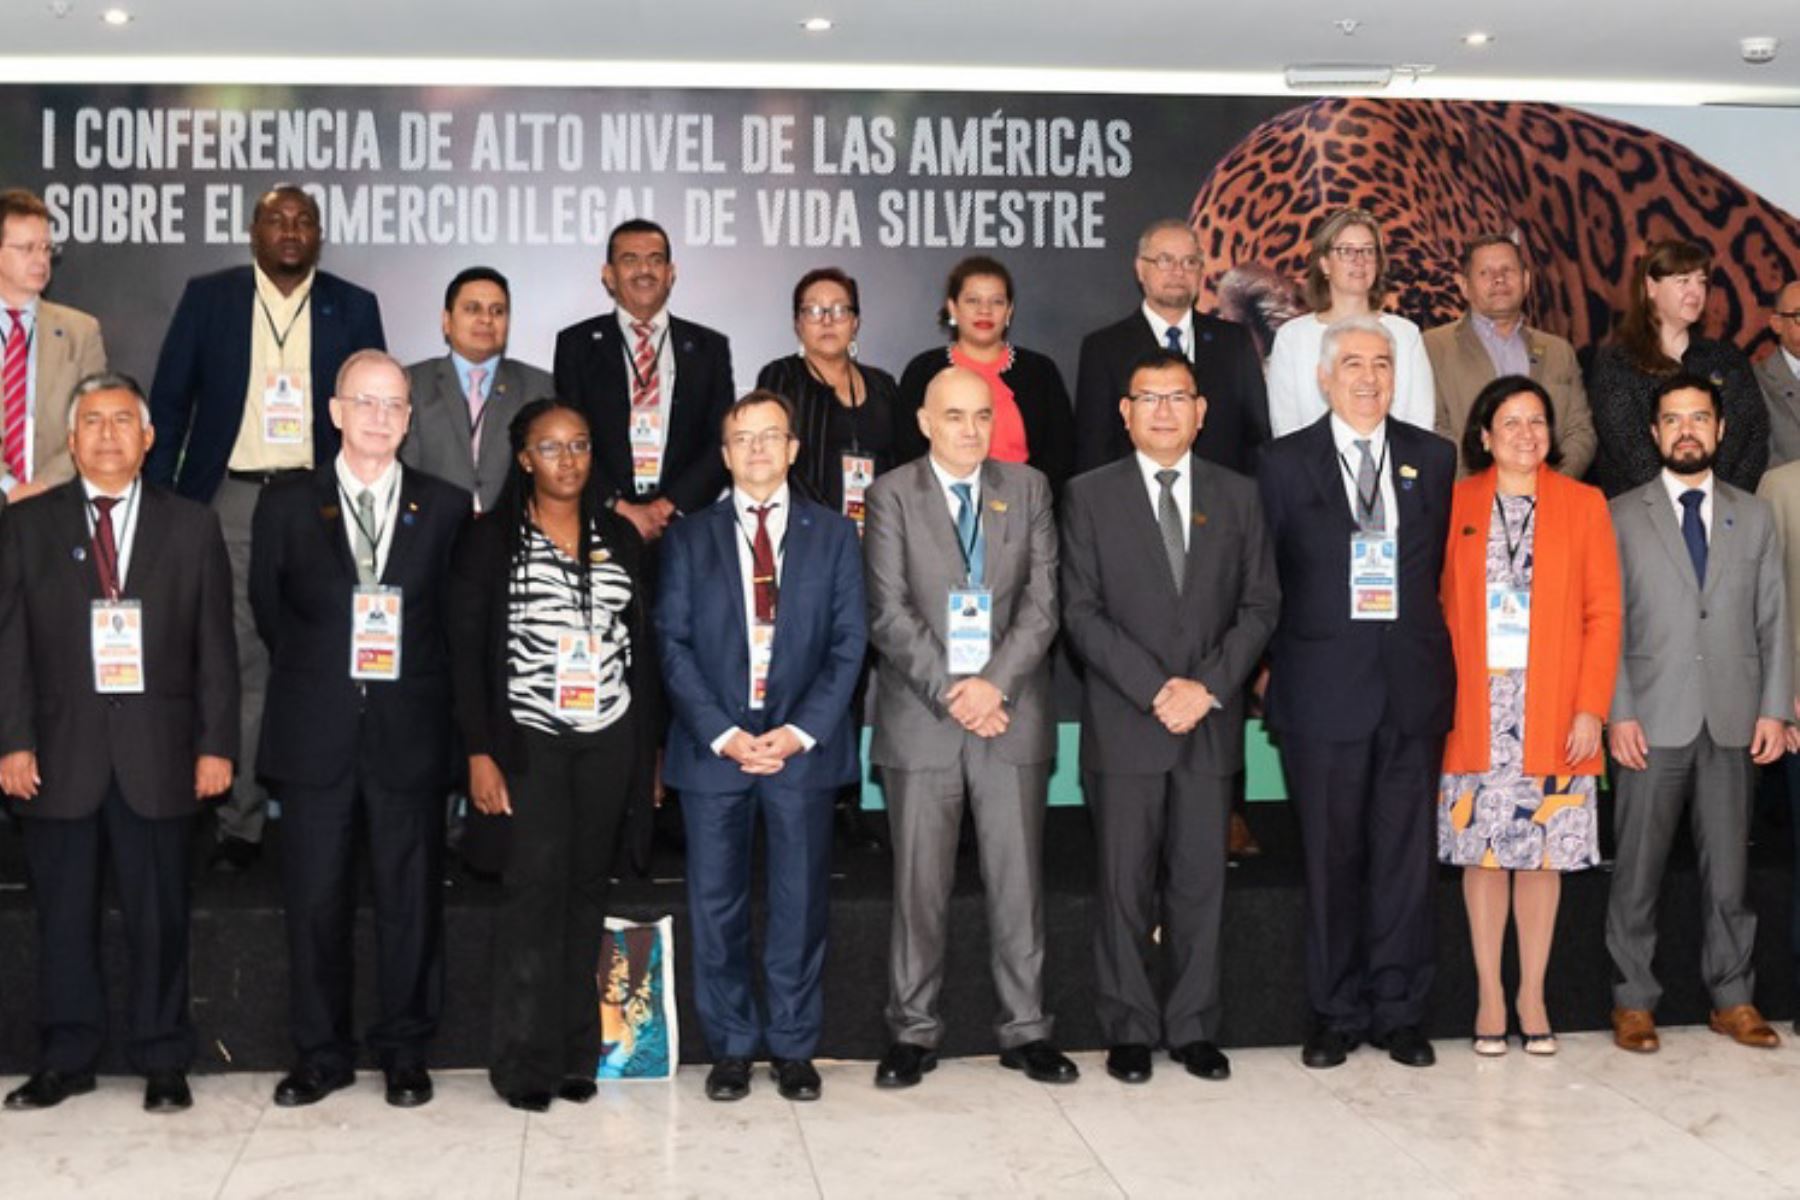 Representantes de países participantes en la Primera Conferencia de Alto Nivel de las Américas sobre Comercio Ilegal de Vida Silvestre. ANDINA/Difusión